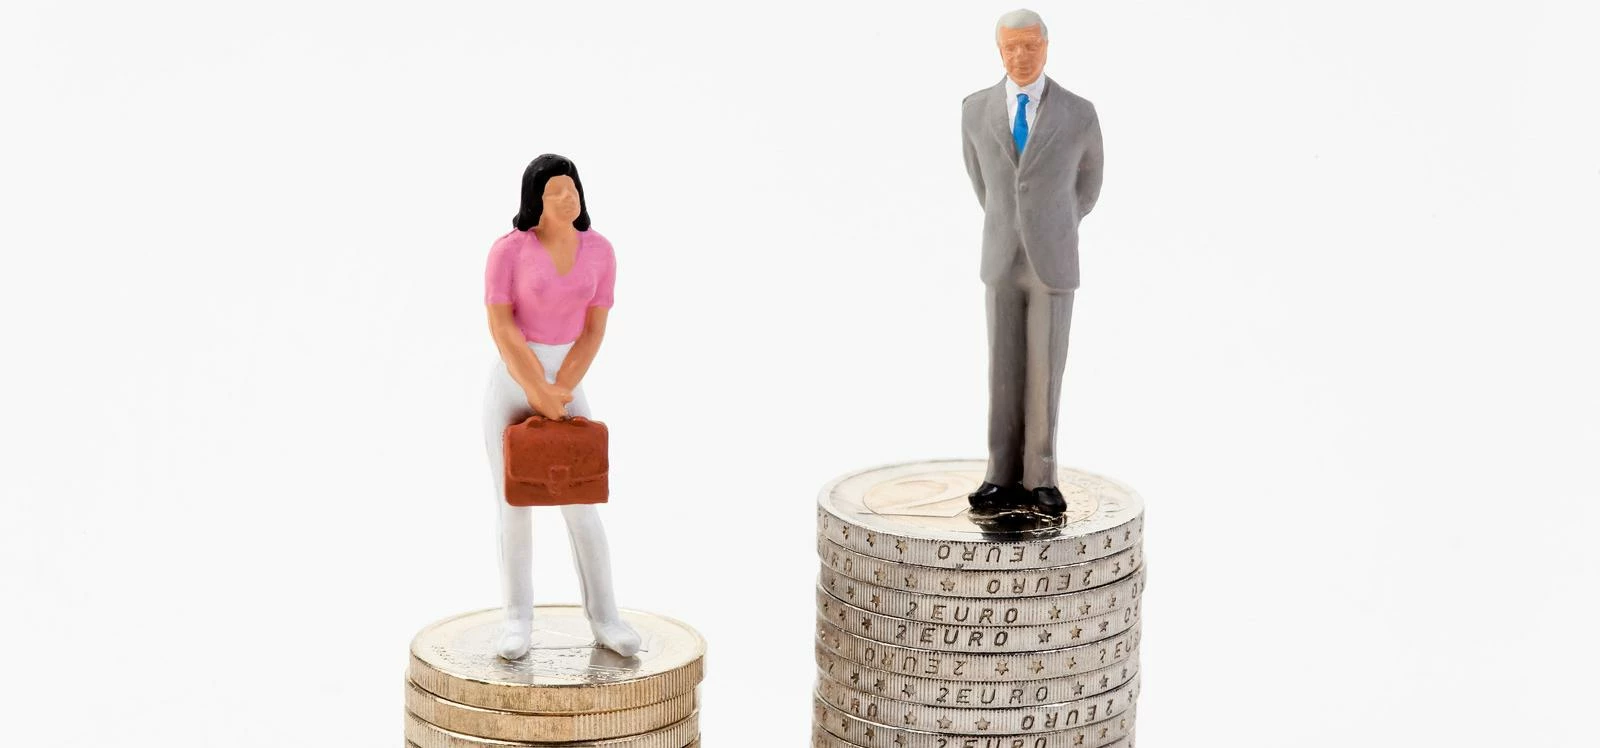 HR Dept Gender Pay Gap